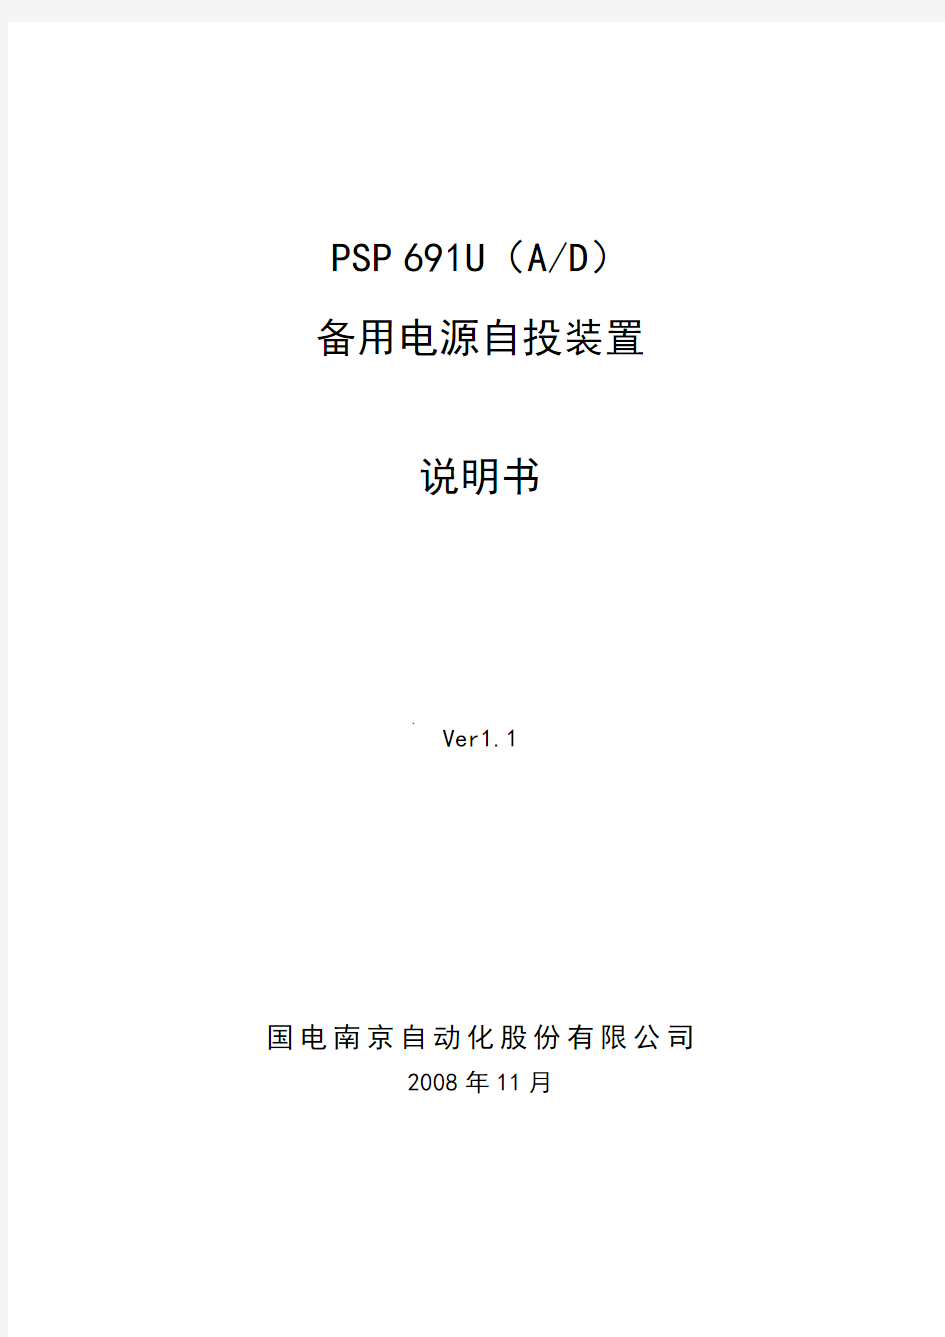 PSP691U(A,D)备用电源自投装置(南自)